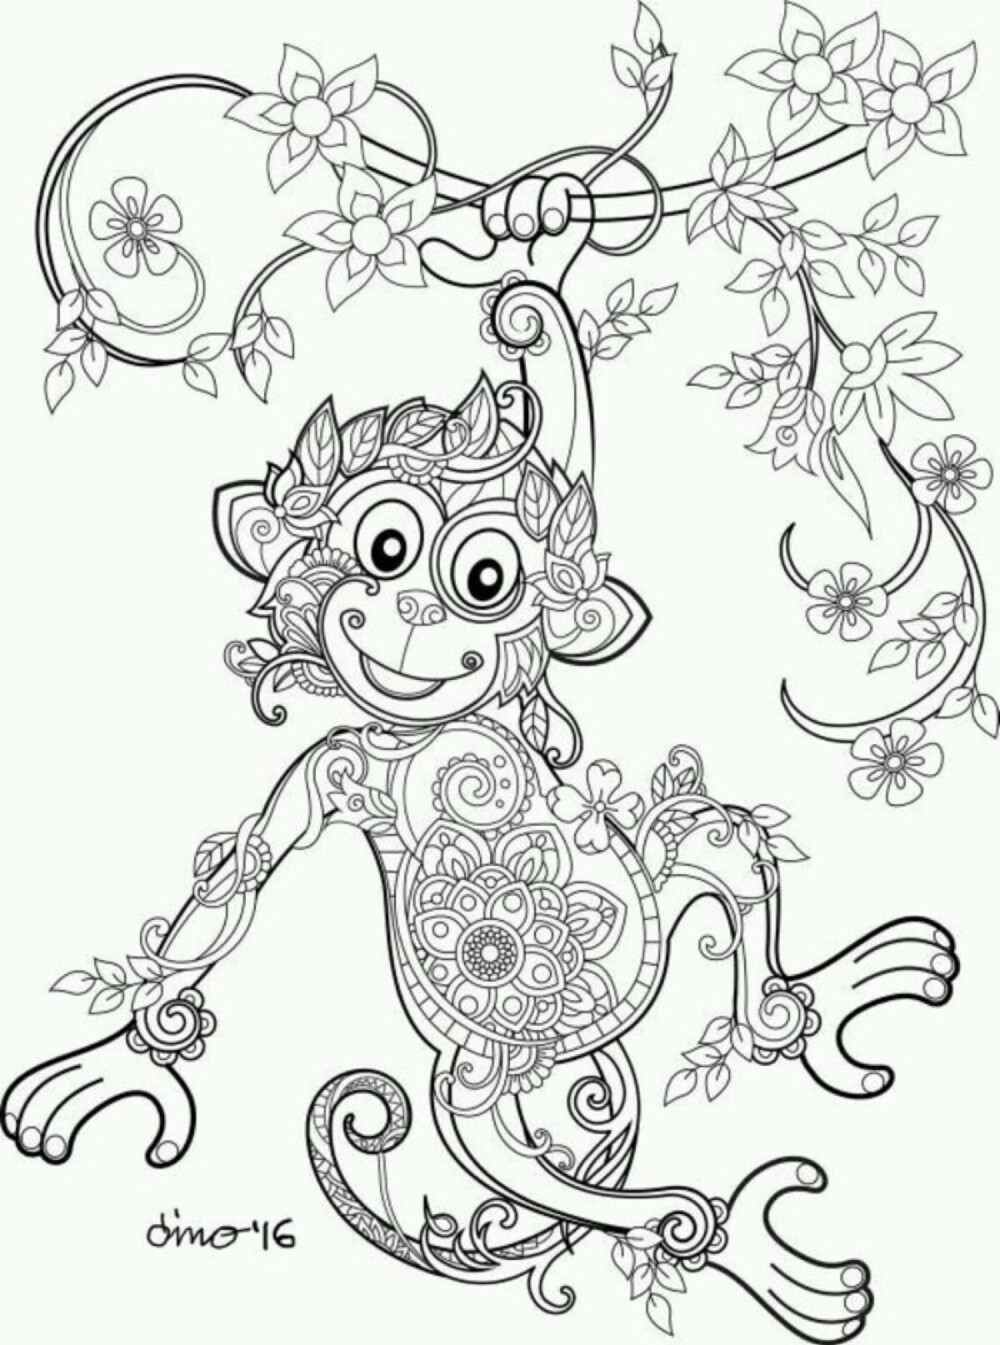 猴子黑白线描画图片